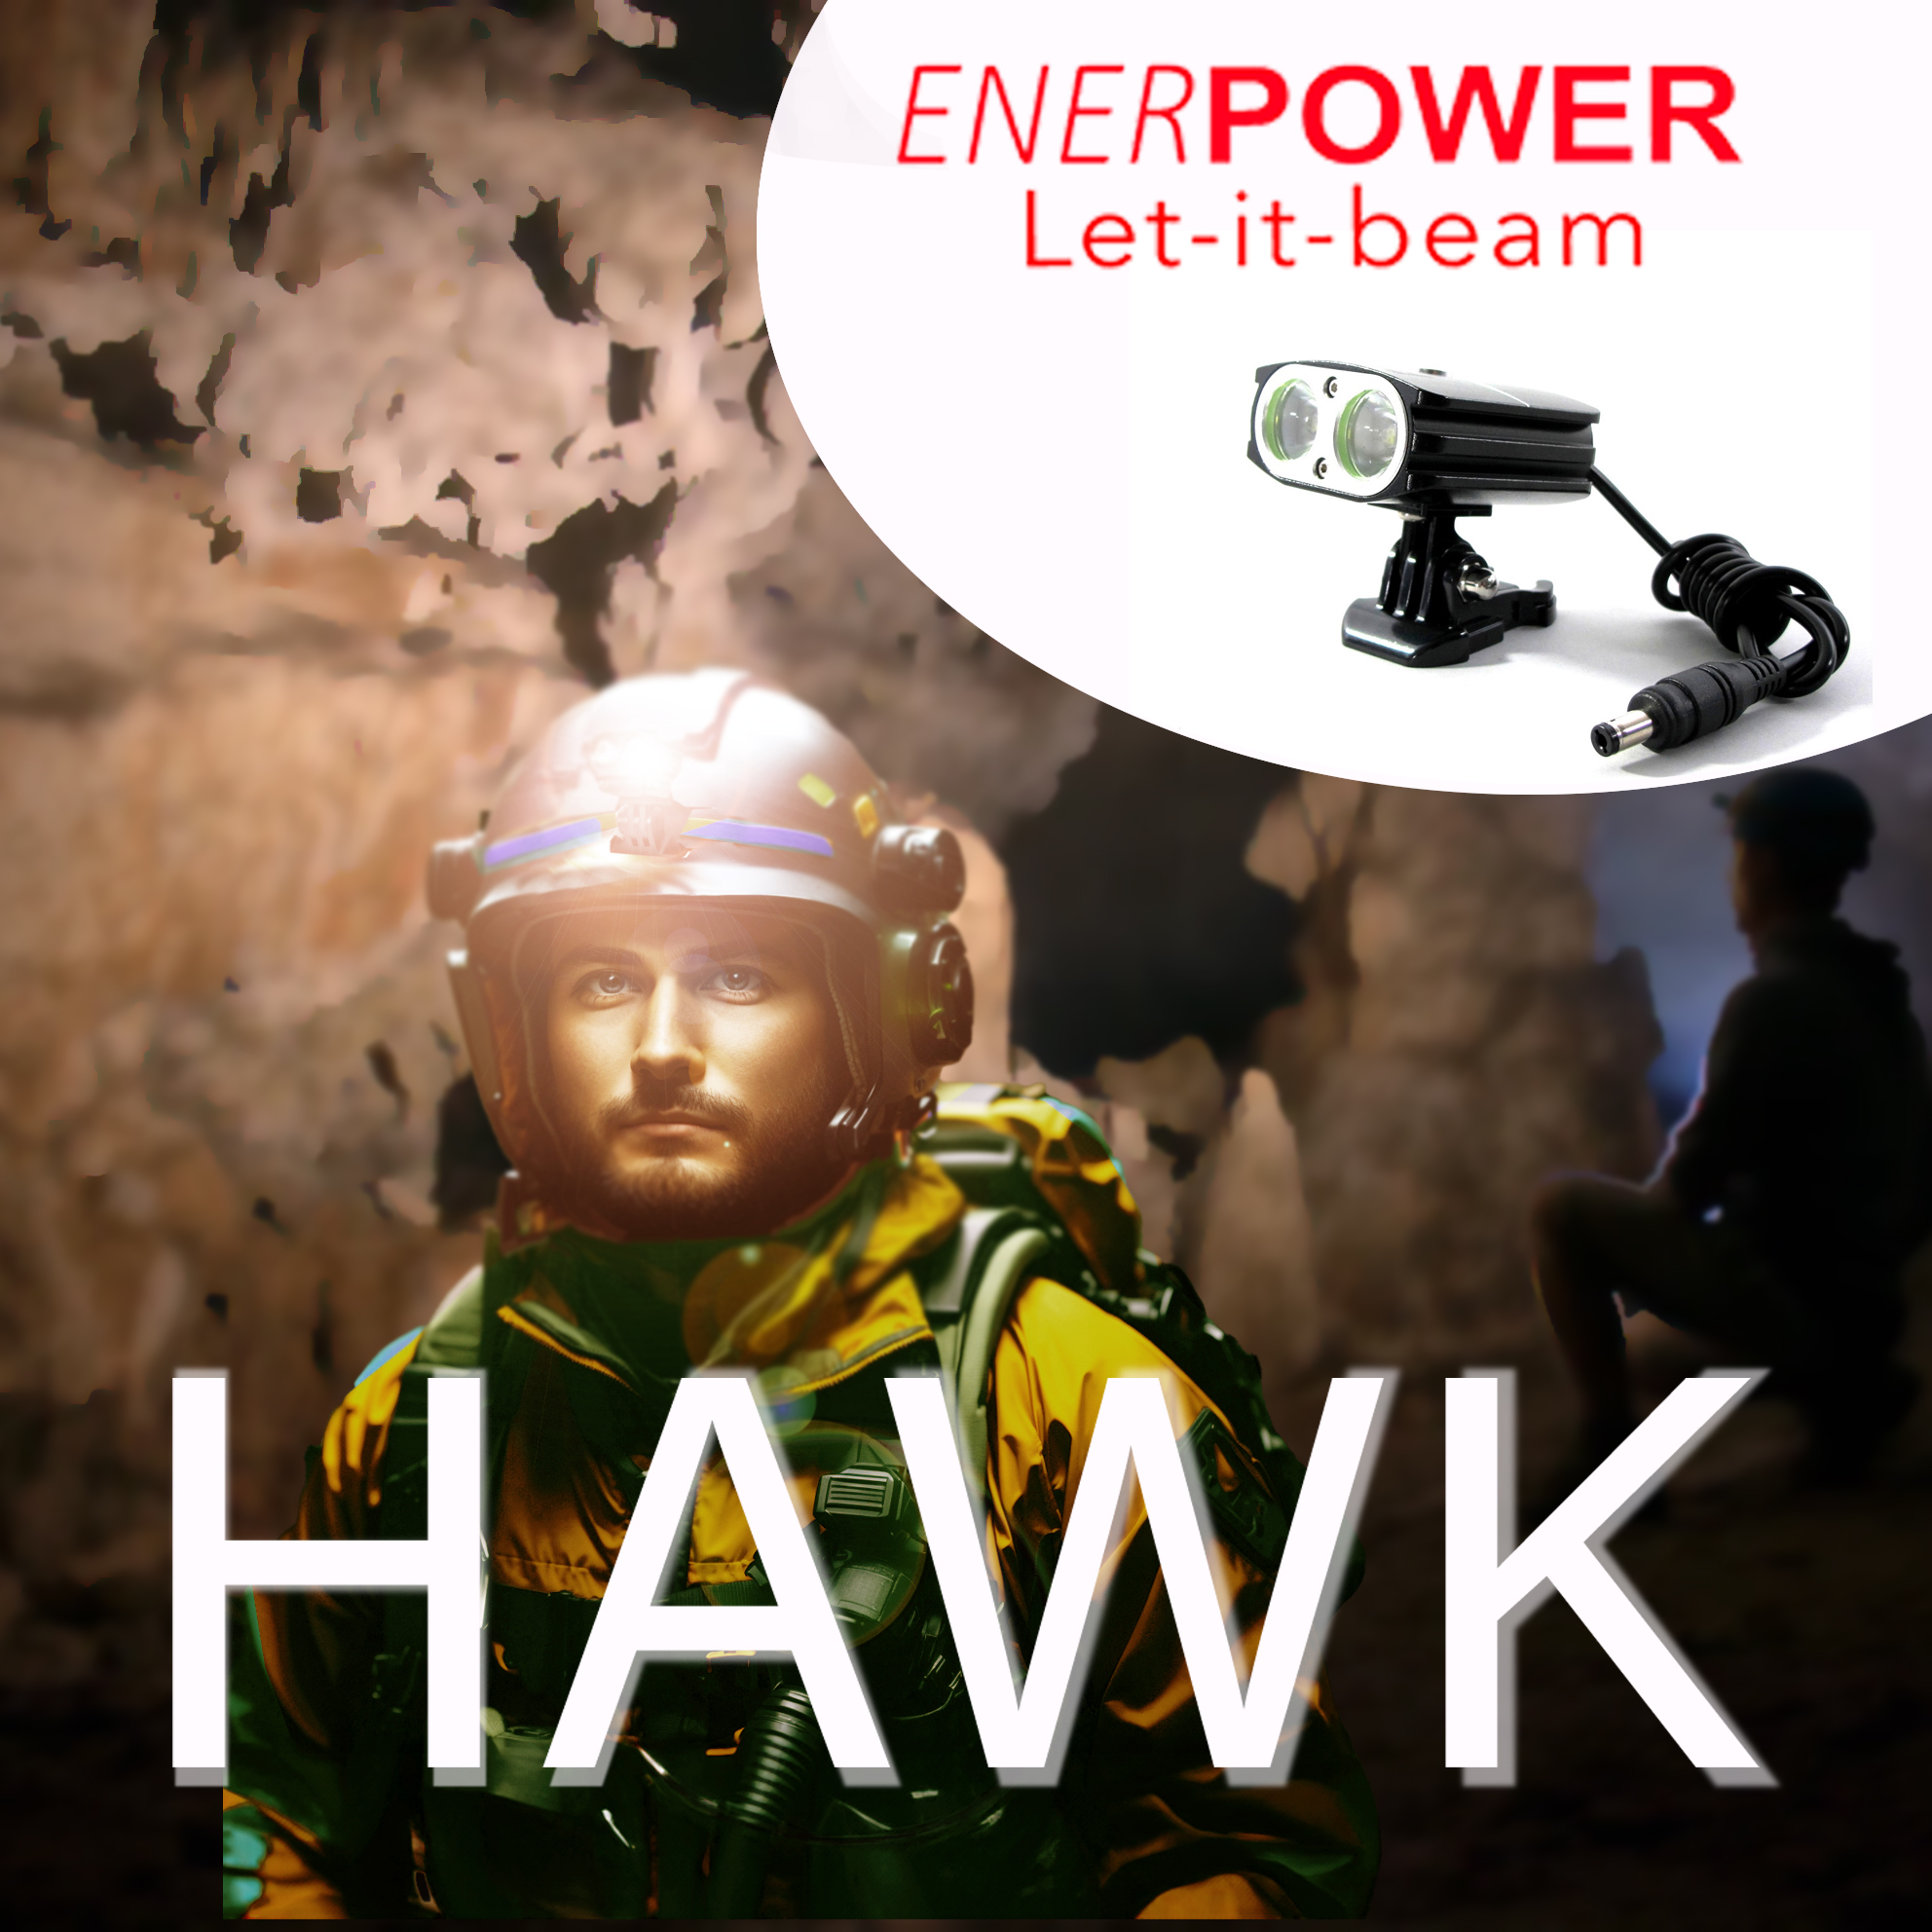 Kopflampe Enerpower HAWK 2 CREE XM-L U2 Helmlampe 2200 Lumen